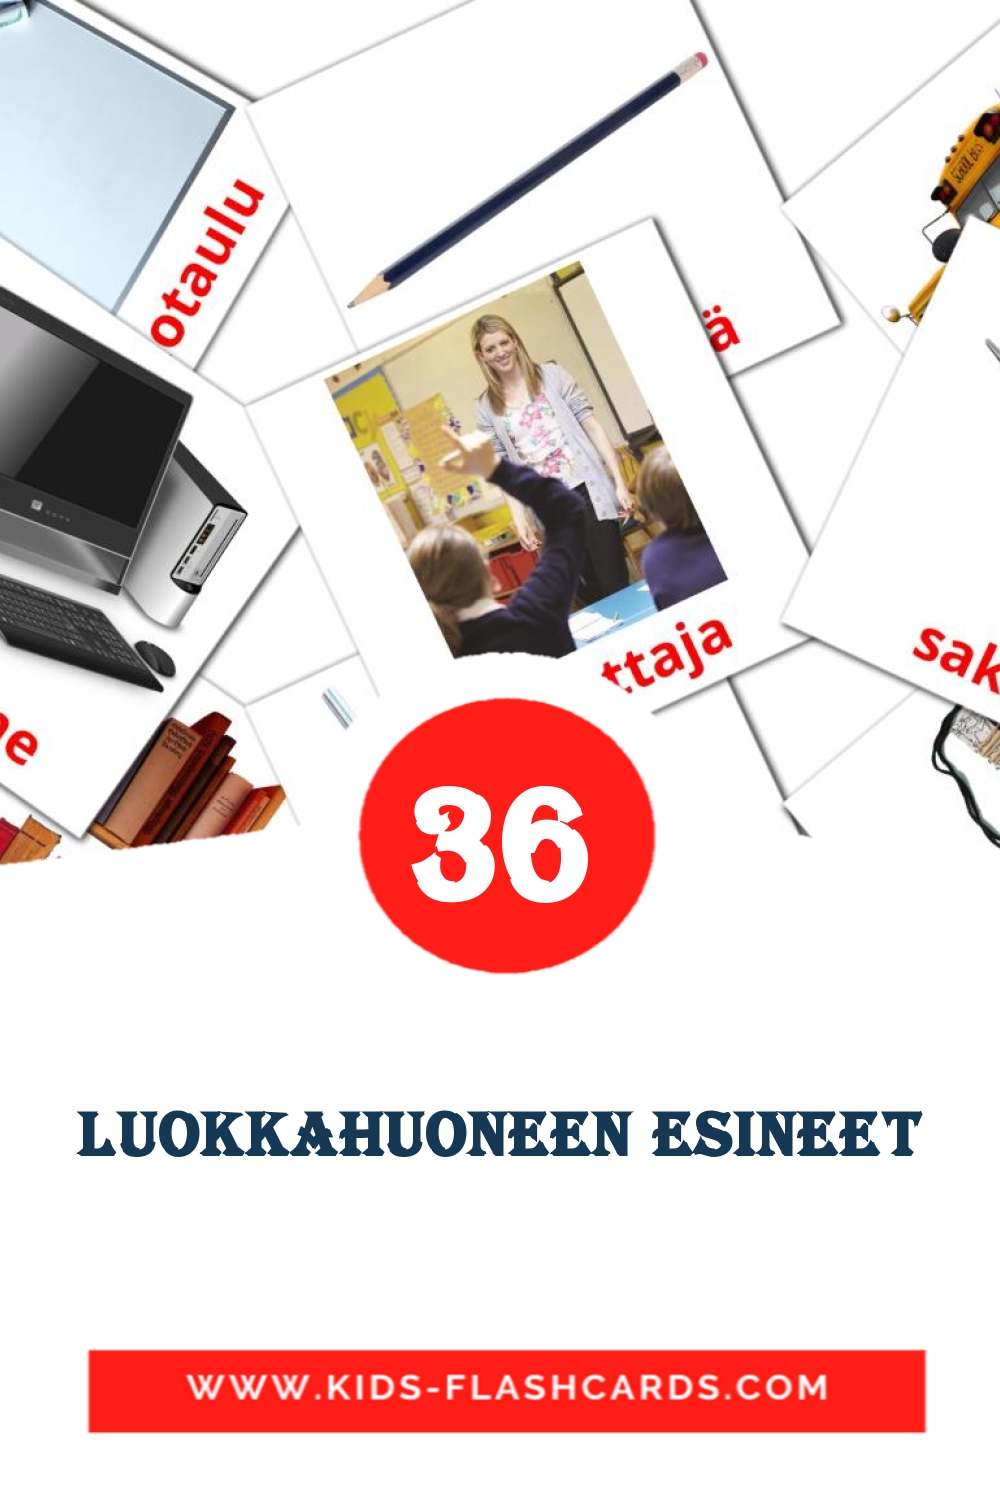 36 Cartões com Imagens de luokkahuoneen esineet para Jardim de Infância em finlandês